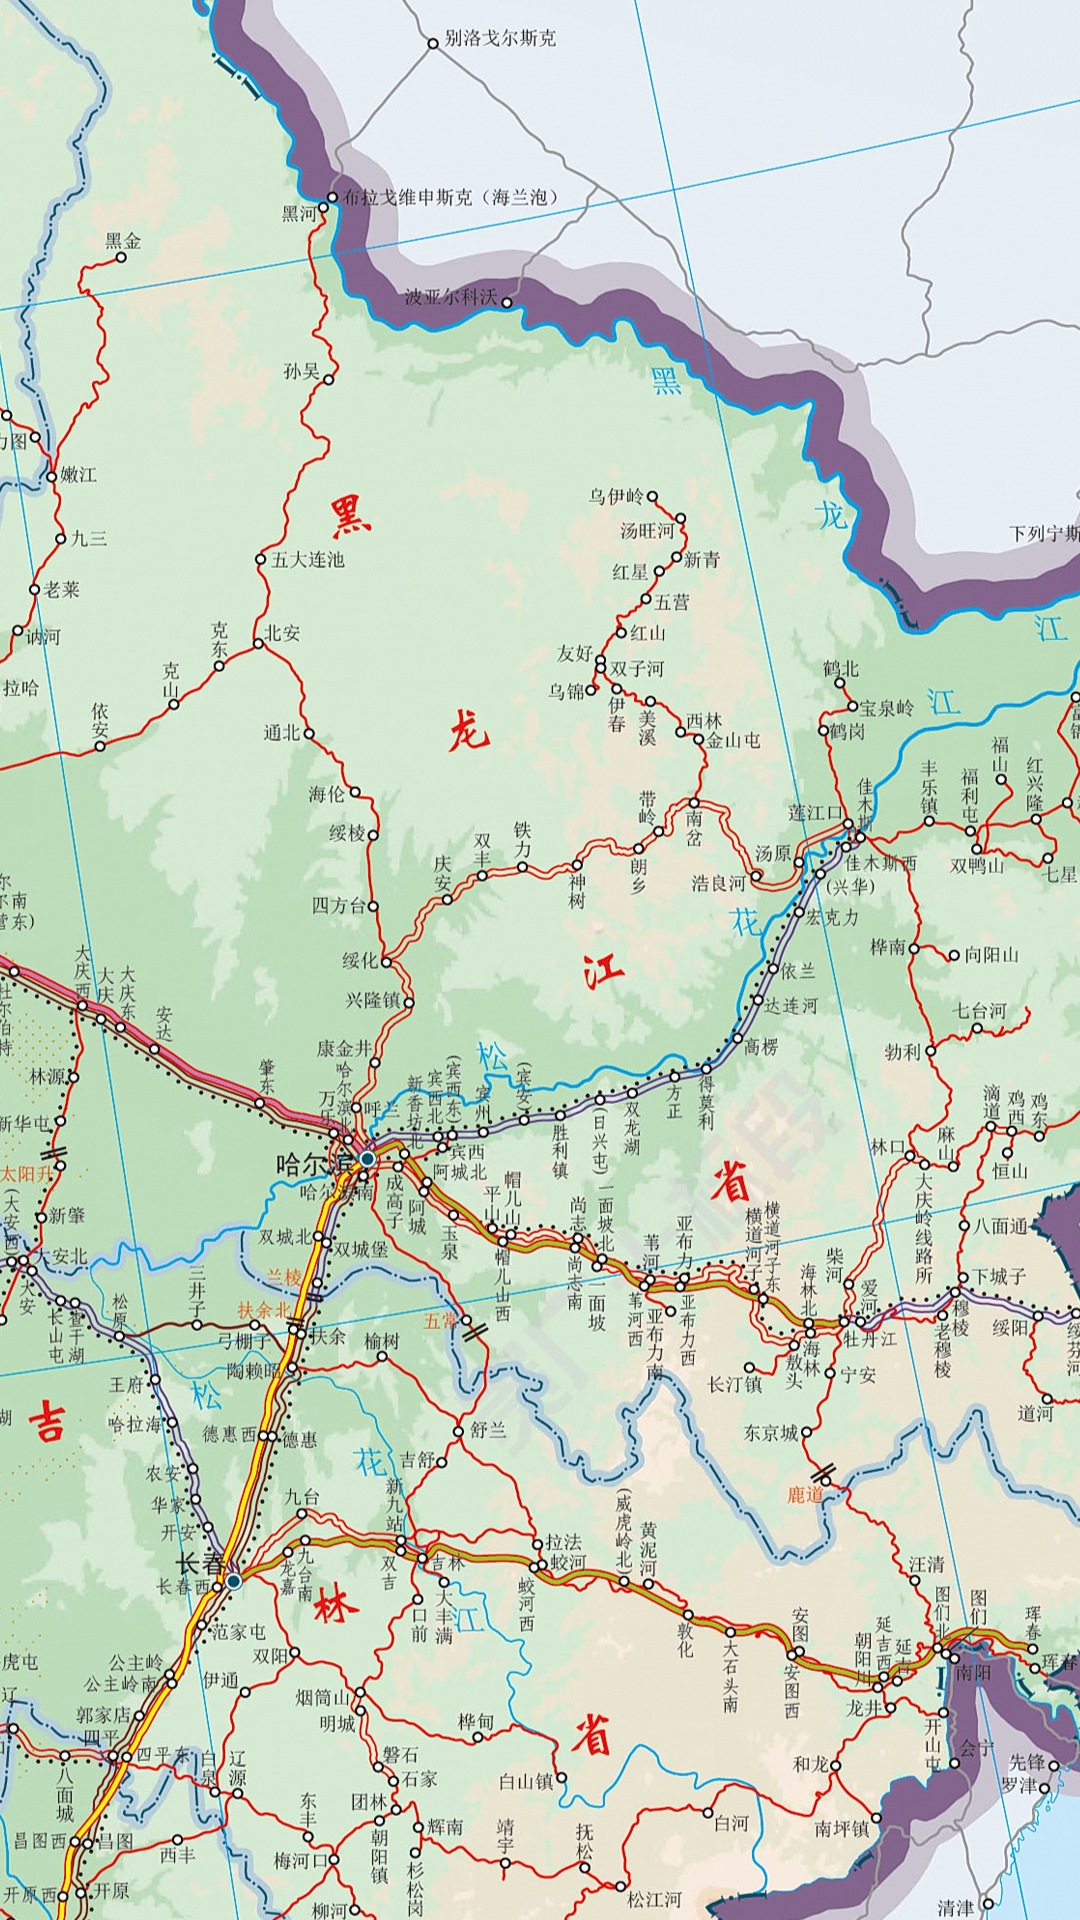 为什么黑龙江靠近俄罗斯的铁路都修在山里,不走平原?